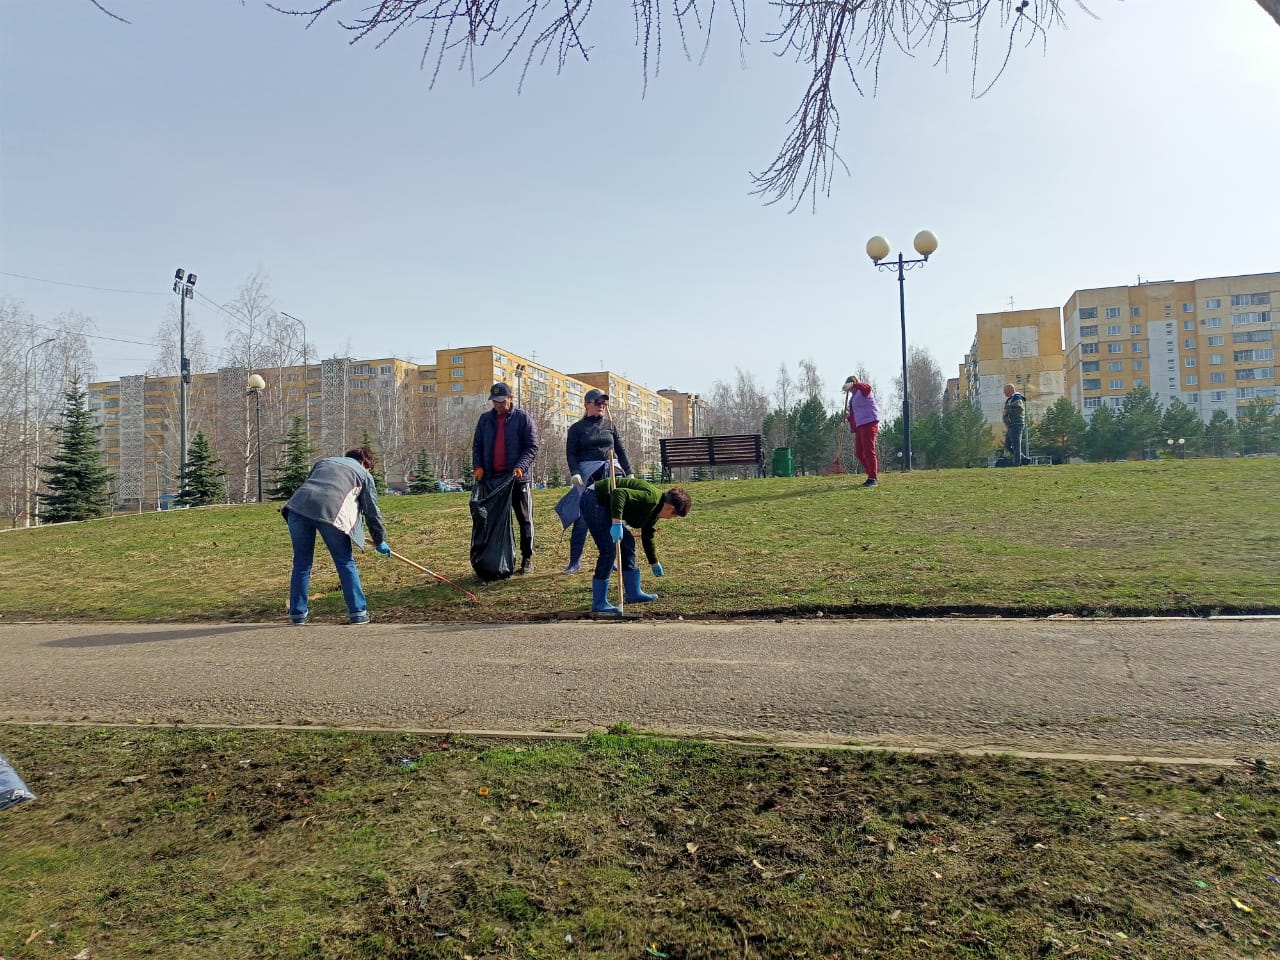  Пролетарском районе г.о. Саранск состоялась уборка в рамках акции "Чистый город"